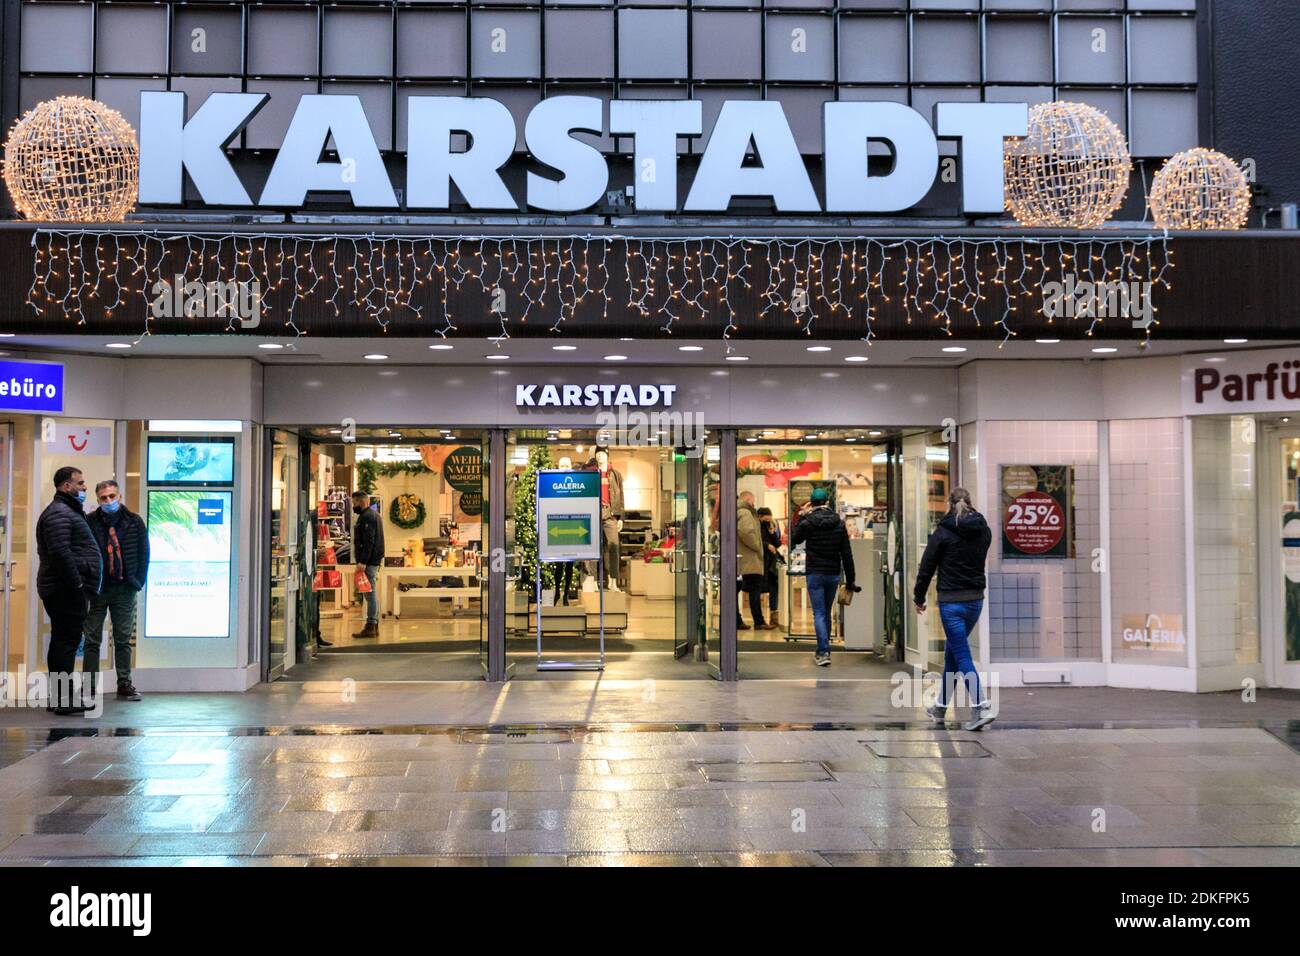 Ruhrpark Shopping Center, Bochum, Alemania, 15 de diciembre de 2020. La gran cadena alemana de grandes almacenes Karstadt Kaufhof ya había advertido de ventas inferiores a las habituales durante el período de "cierre" desde noviembre y ha advertido contra pérdidas inevitables debido a la llamada "cierre" que comienza mañana. Hoy fue el último día en que se permitió que los minoristas y los servicios, además de los alimentos y los suministros esenciales, estuvieran abiertos antes de que el cierre comenzara mañana. También incluye el cierre de la mayoría de las escuelas secundarias, peluqueros y servicios relacionados. Crédito: Imageplotter/Alamy Live News Foto de stock